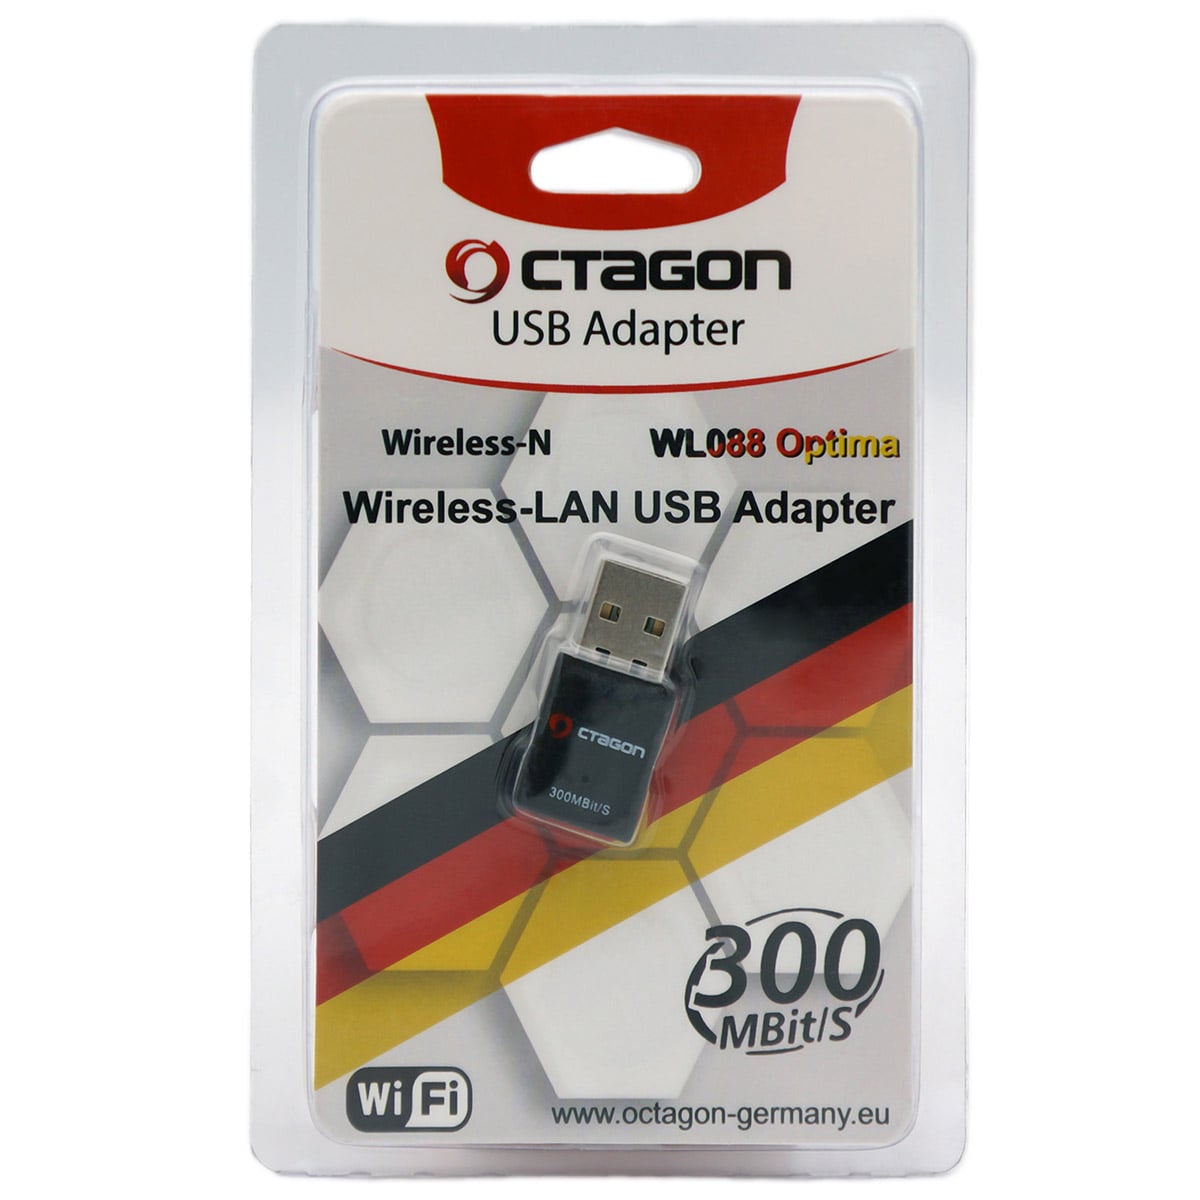 Octagon WL088 Optima WLAN Stick 300 MBit/s, 2.4 GHz WiFi, USB 2.0 Adapter schwarz